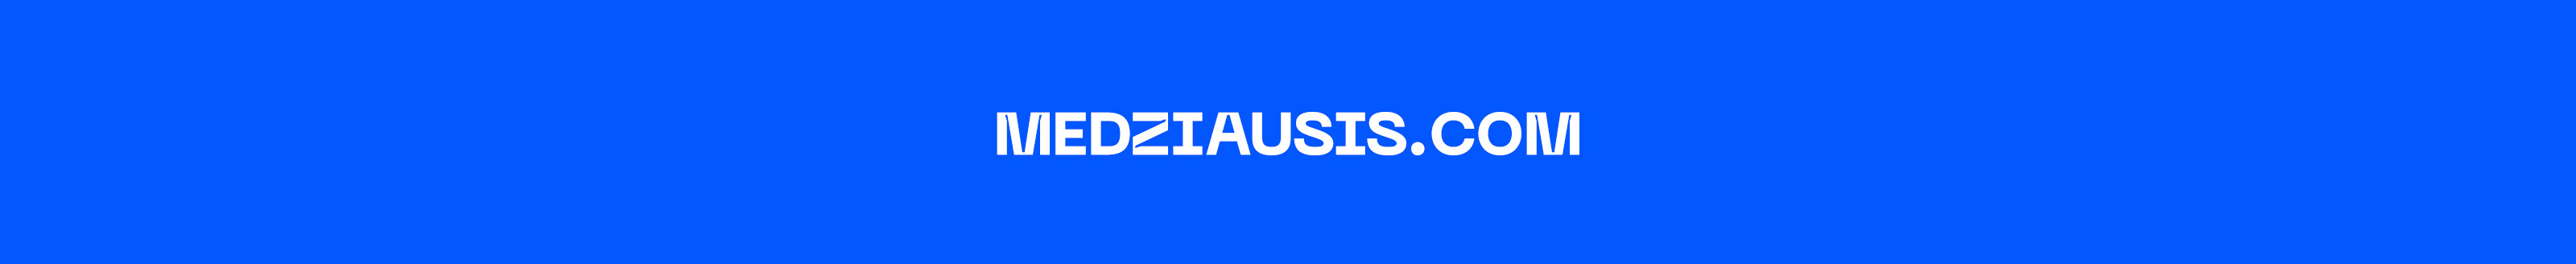 Gediminas Medžiaušis's profile banner